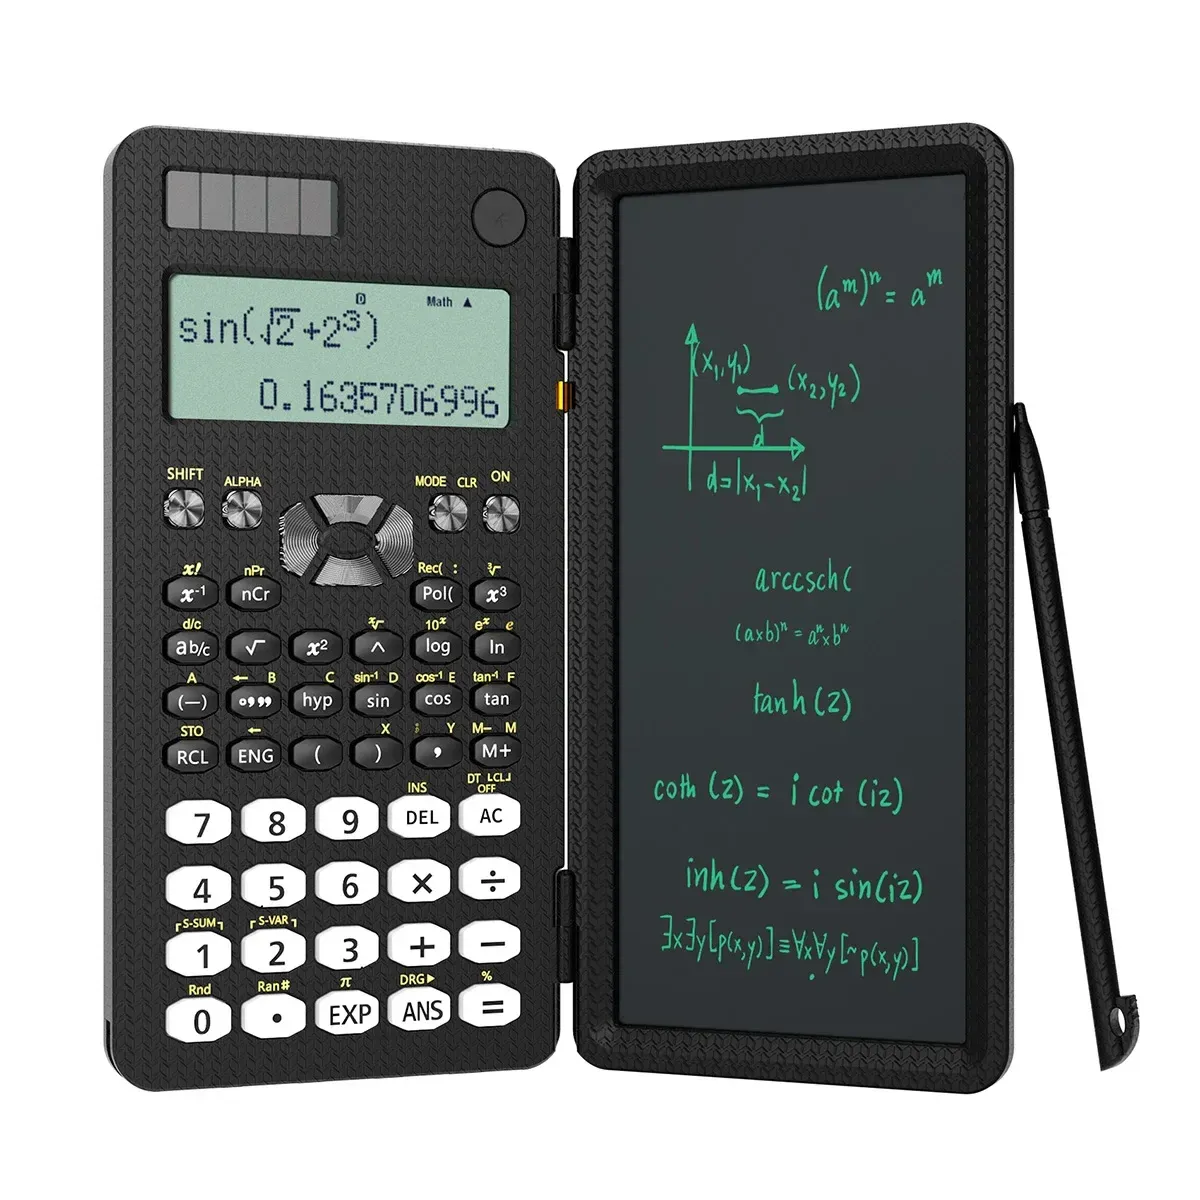 Taschenrechner Newyes mini wissenschaftlicher Taschenrechner mit Schreiben von Tablet -Taschenrechnern Notepad Memo Office Electronics School Lieferungen 991es MS 82ms